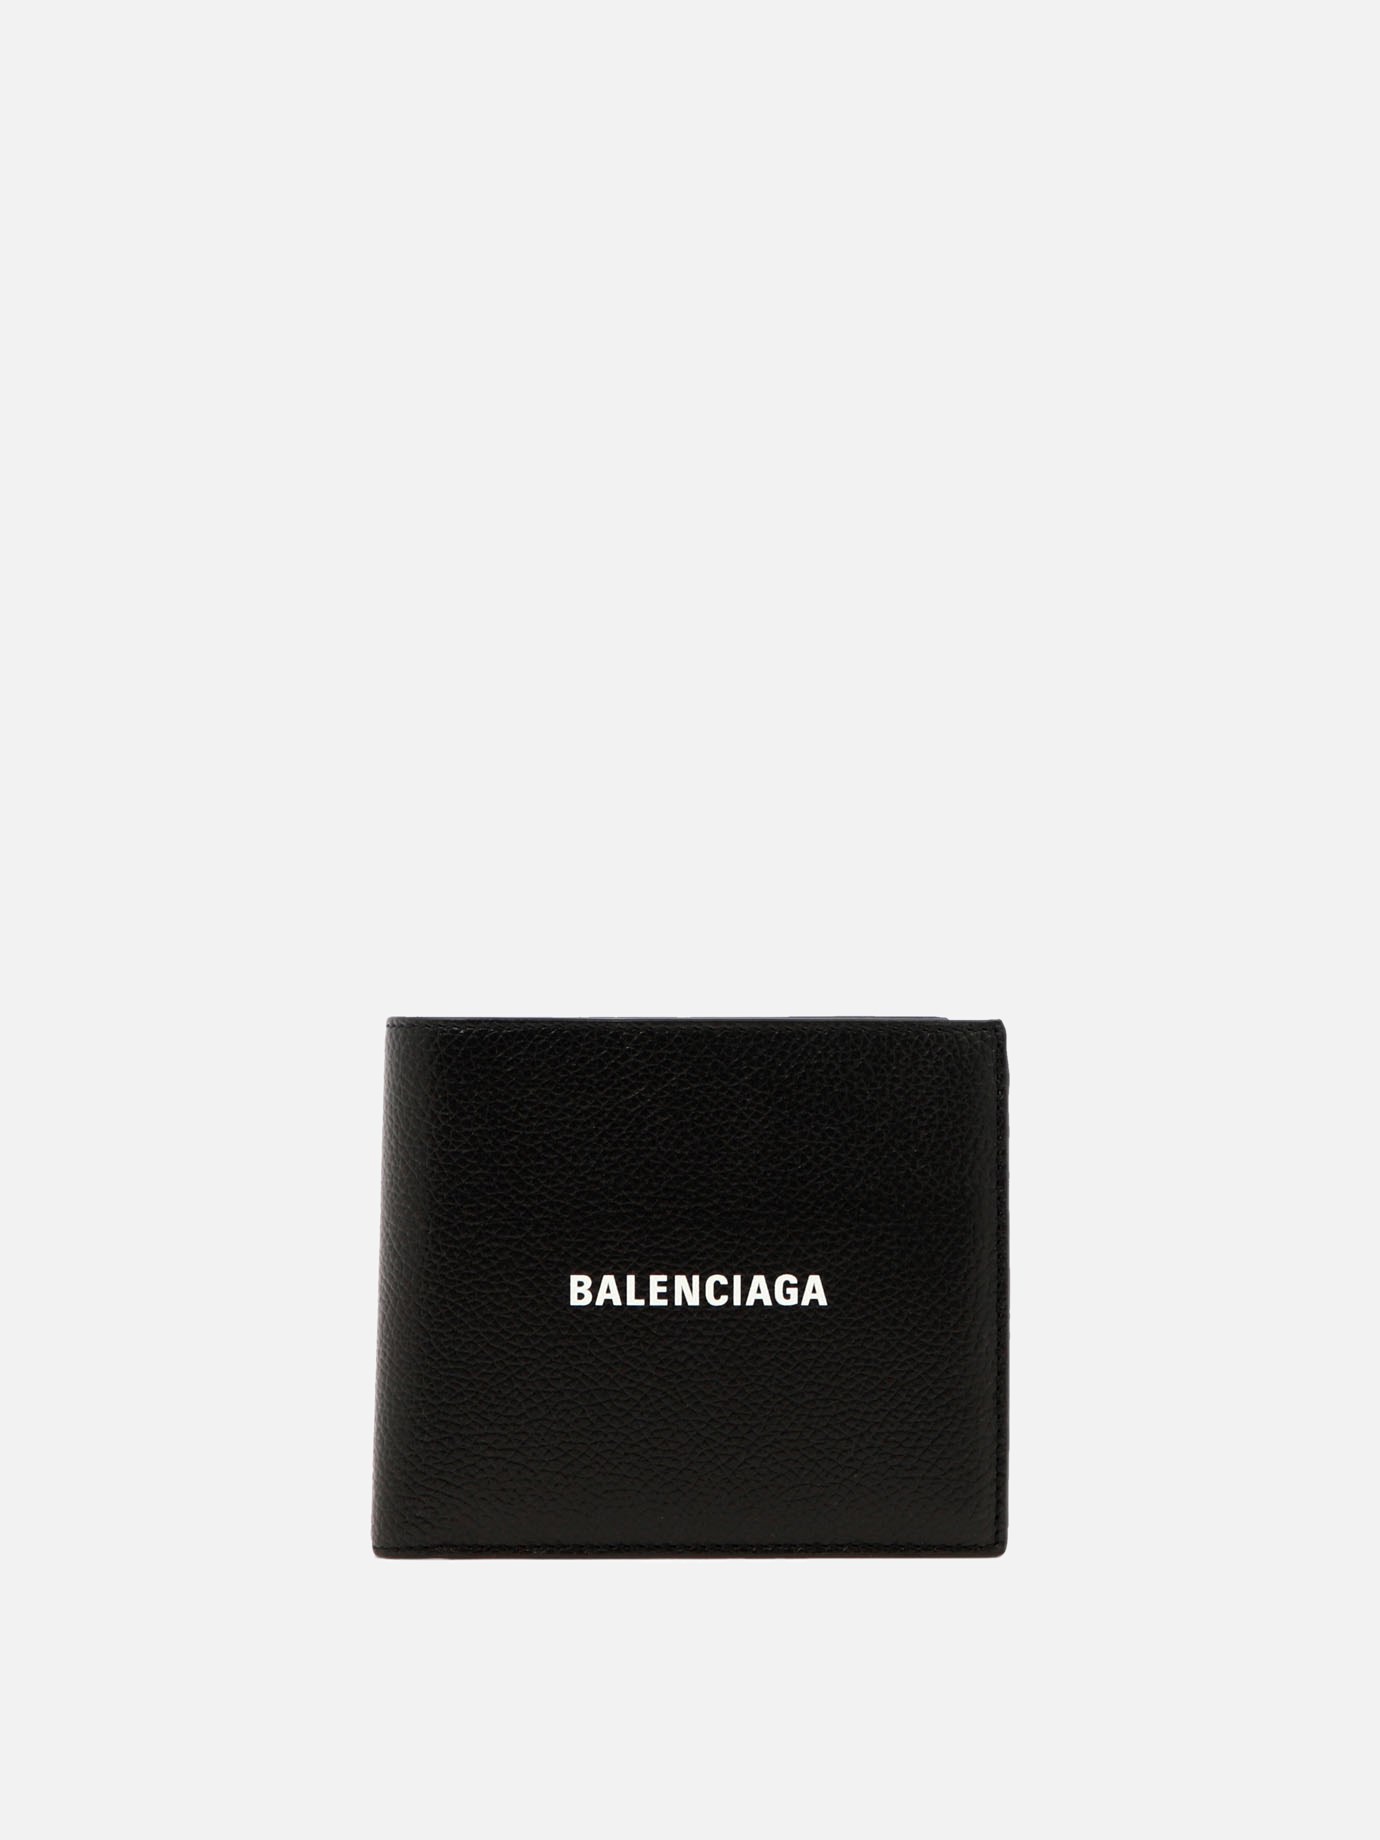  Cash Square Folded Coin  walletby Balenciaga - 5